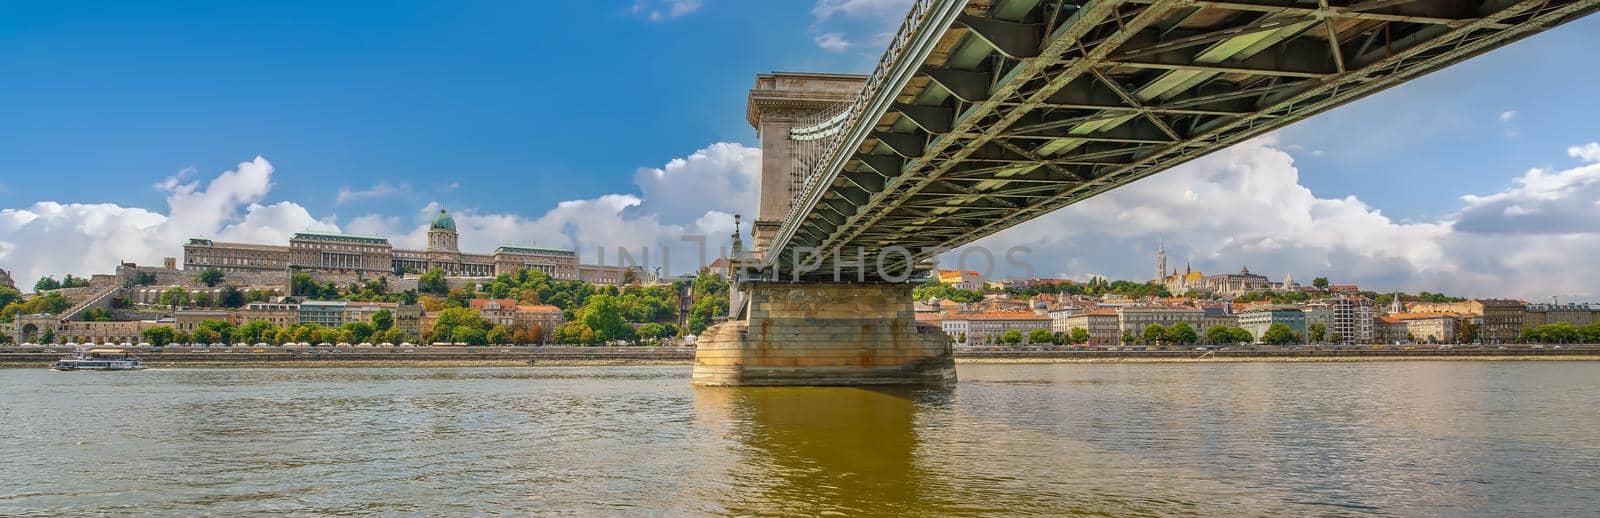 Budapest city skyline, cityscape of Hungary 